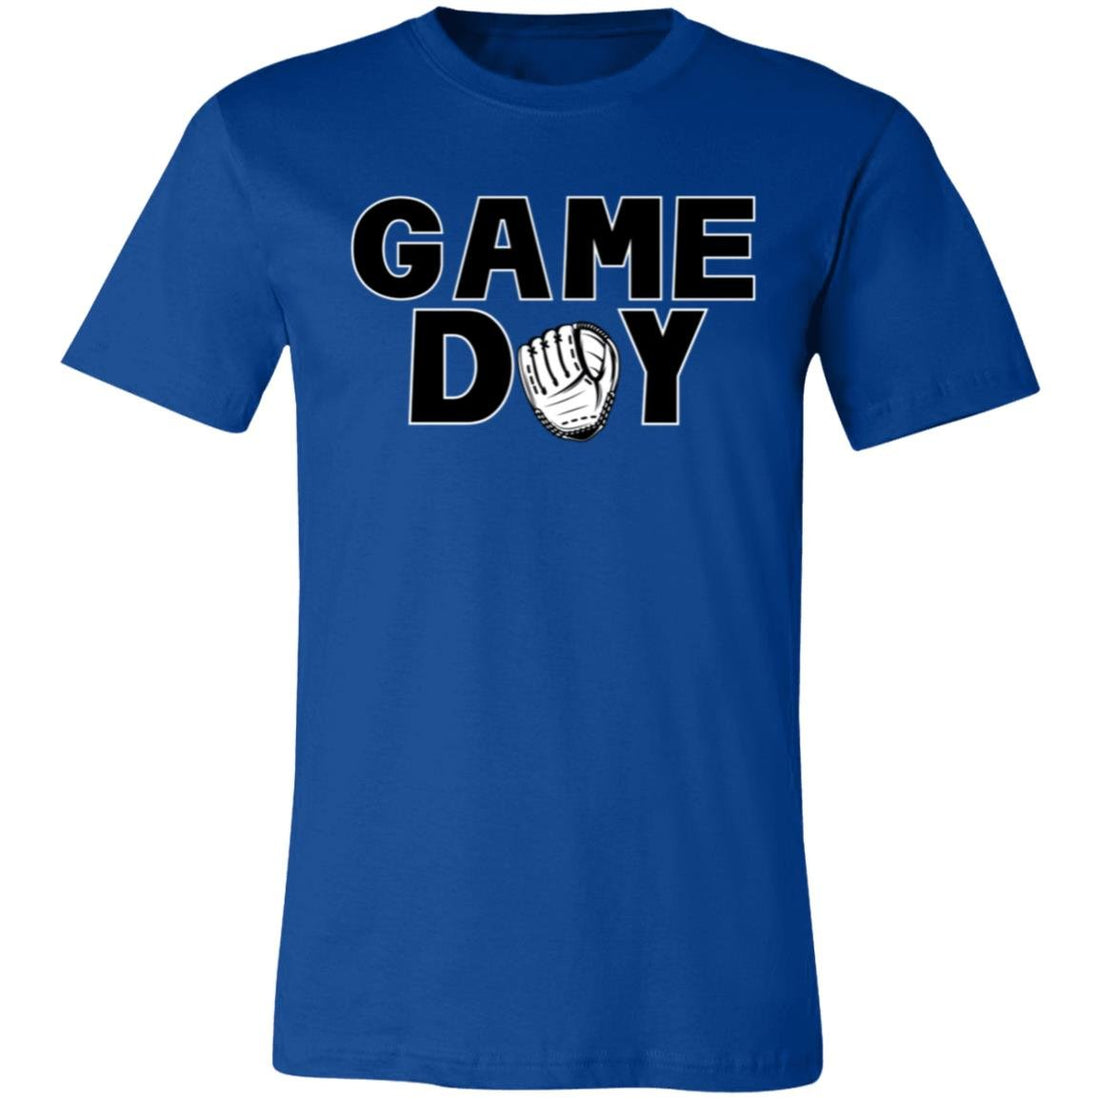 Game Day Baseball Mitt Short-Sleeve T-Shirt - T-Shirts - Positively Sassy - Game Day Baseball Mitt Short-Sleeve T-Shirt